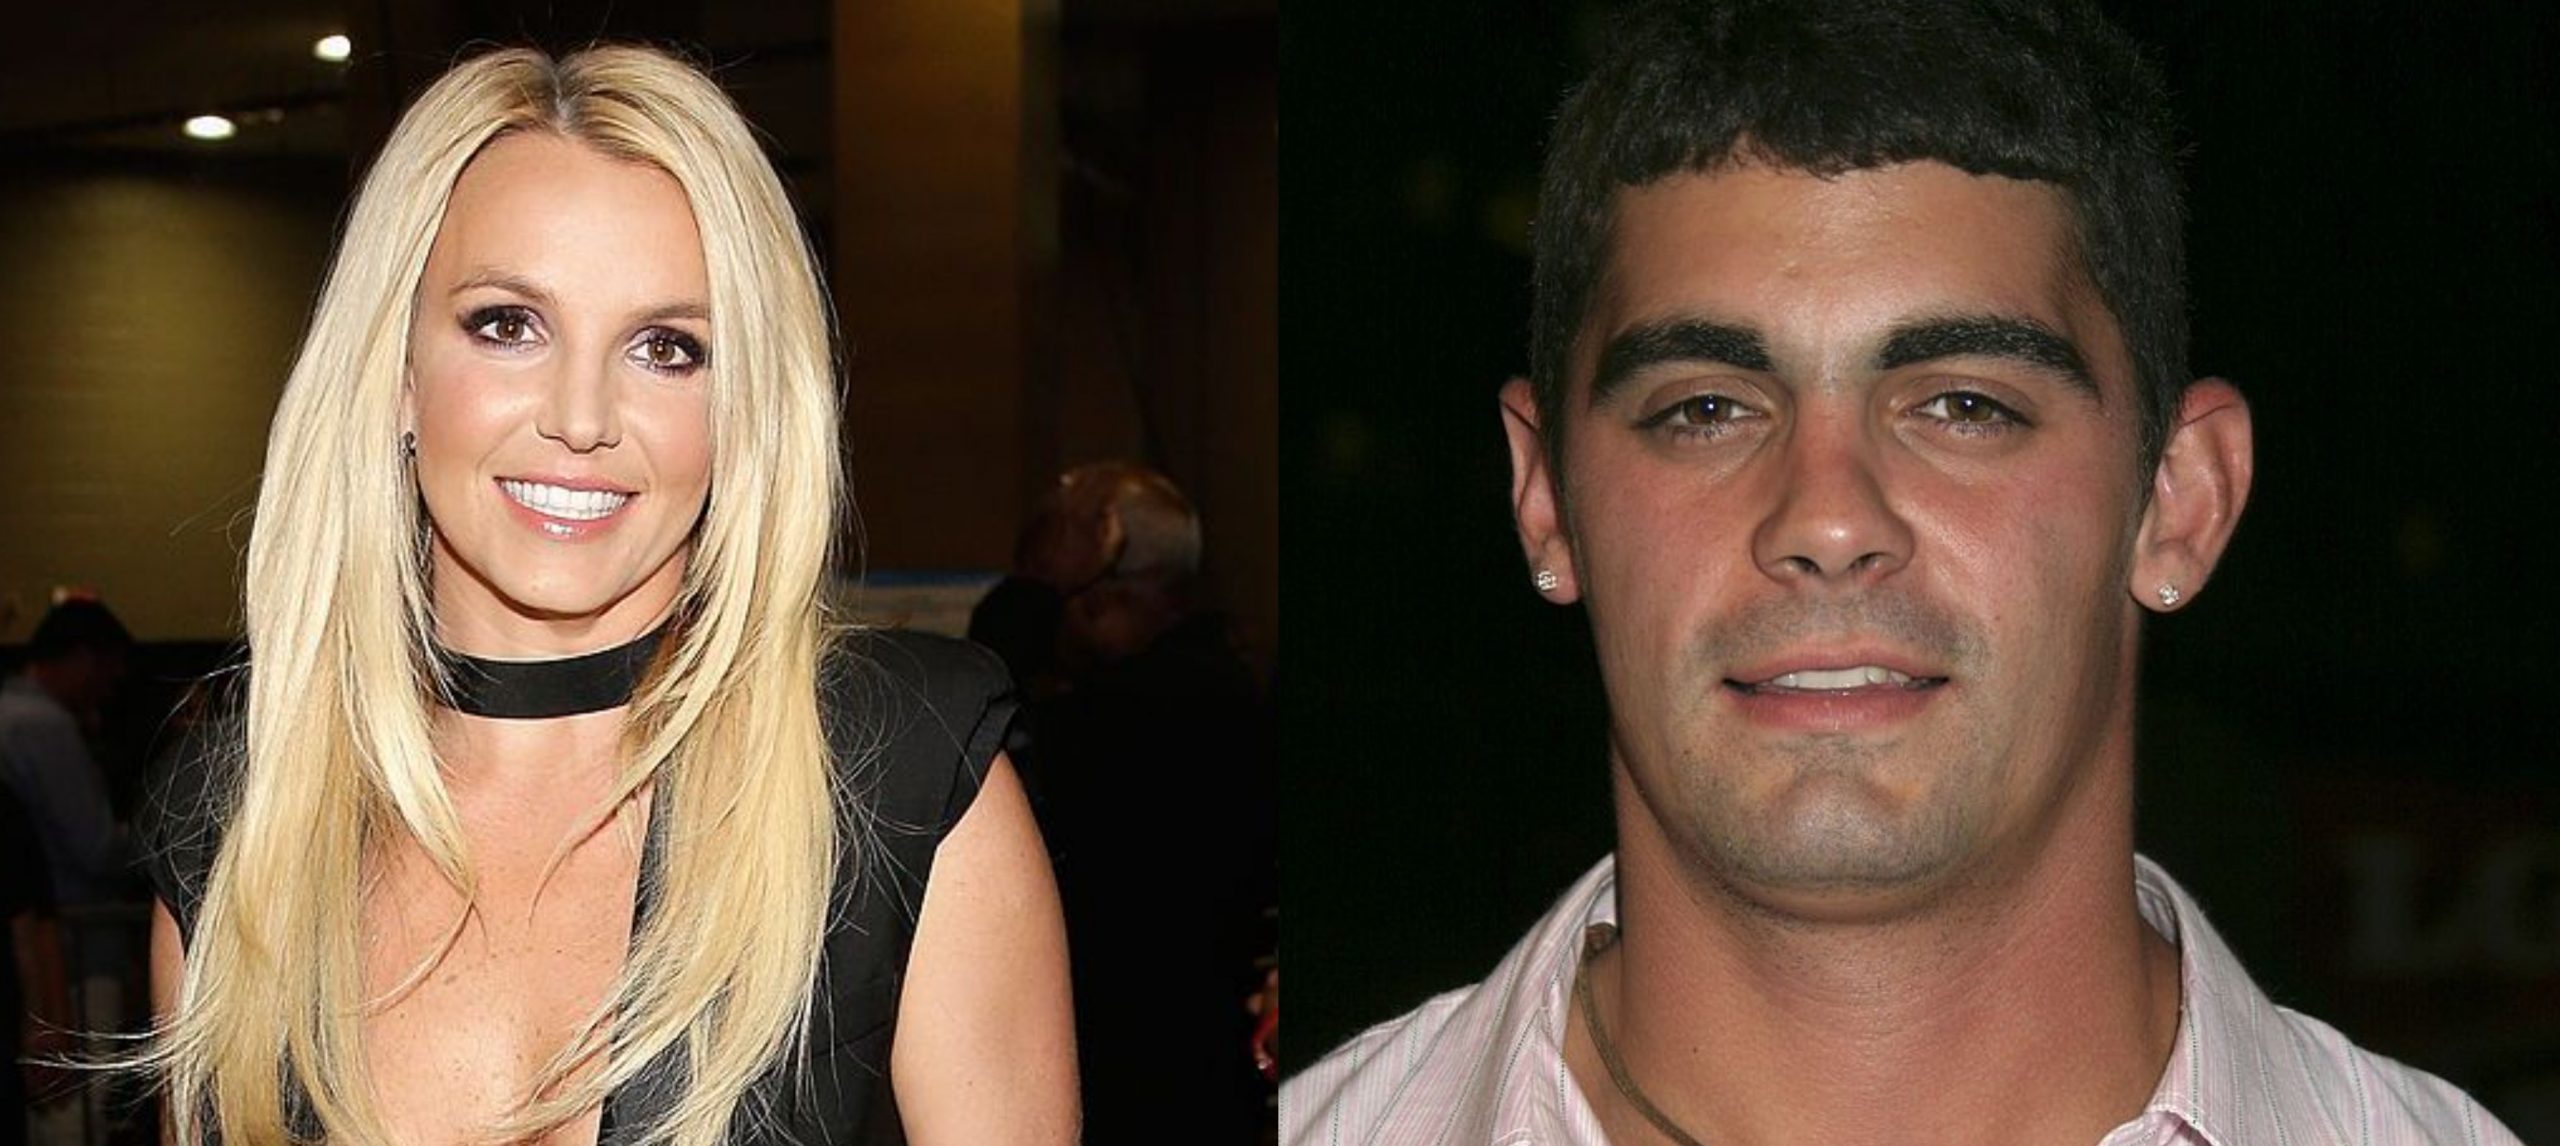 Απίστευτη αποκάλυψη! Ο πρώην σύζυγος της Britney Spears προσπάθησε να εισβάλλει στο δωμάτιό της